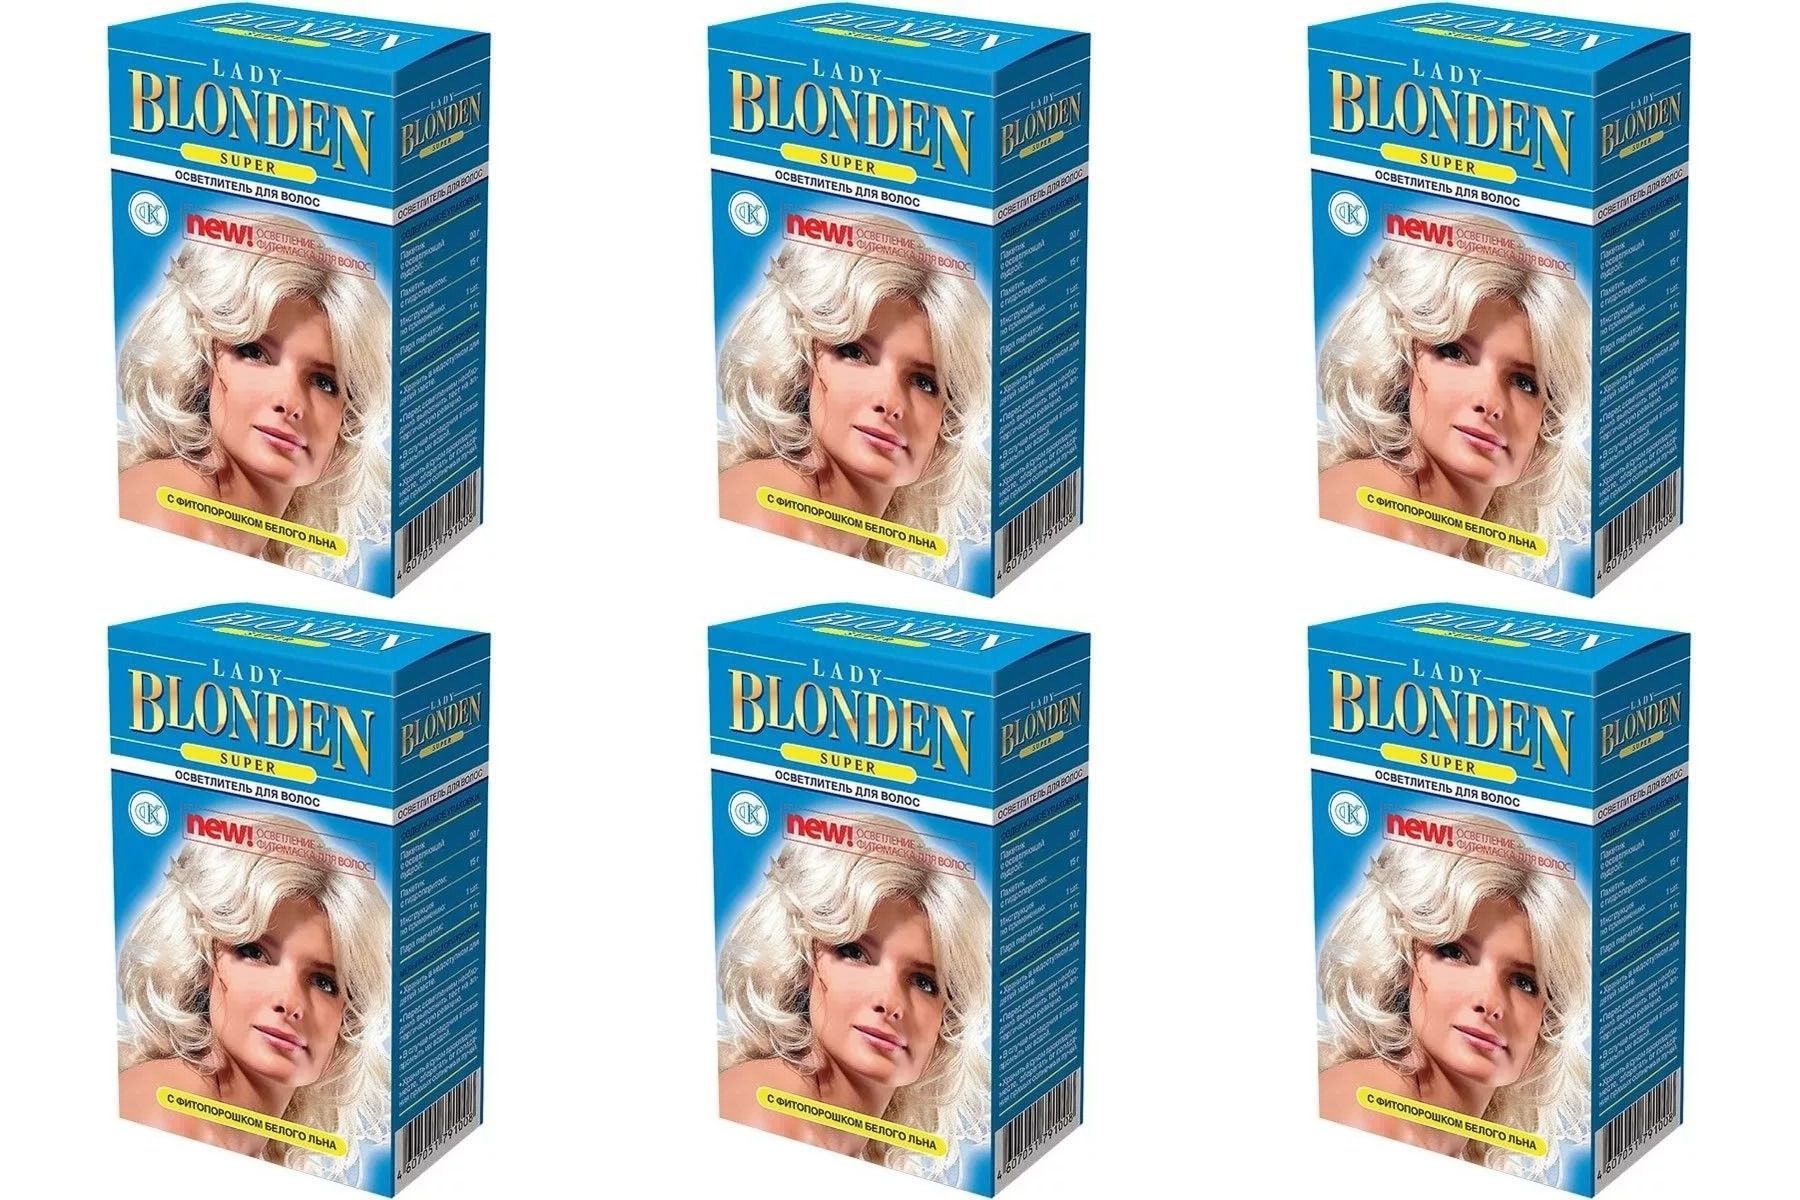 Обесцвечивающие средства волос. Осветлитель для волос "Lady blonden (Extra)", 35г /24шт. Lady blonden осветлитель. Осветлитель д/волос Lady blonden(Extra) 35г. Blonde осветлитель для волос.